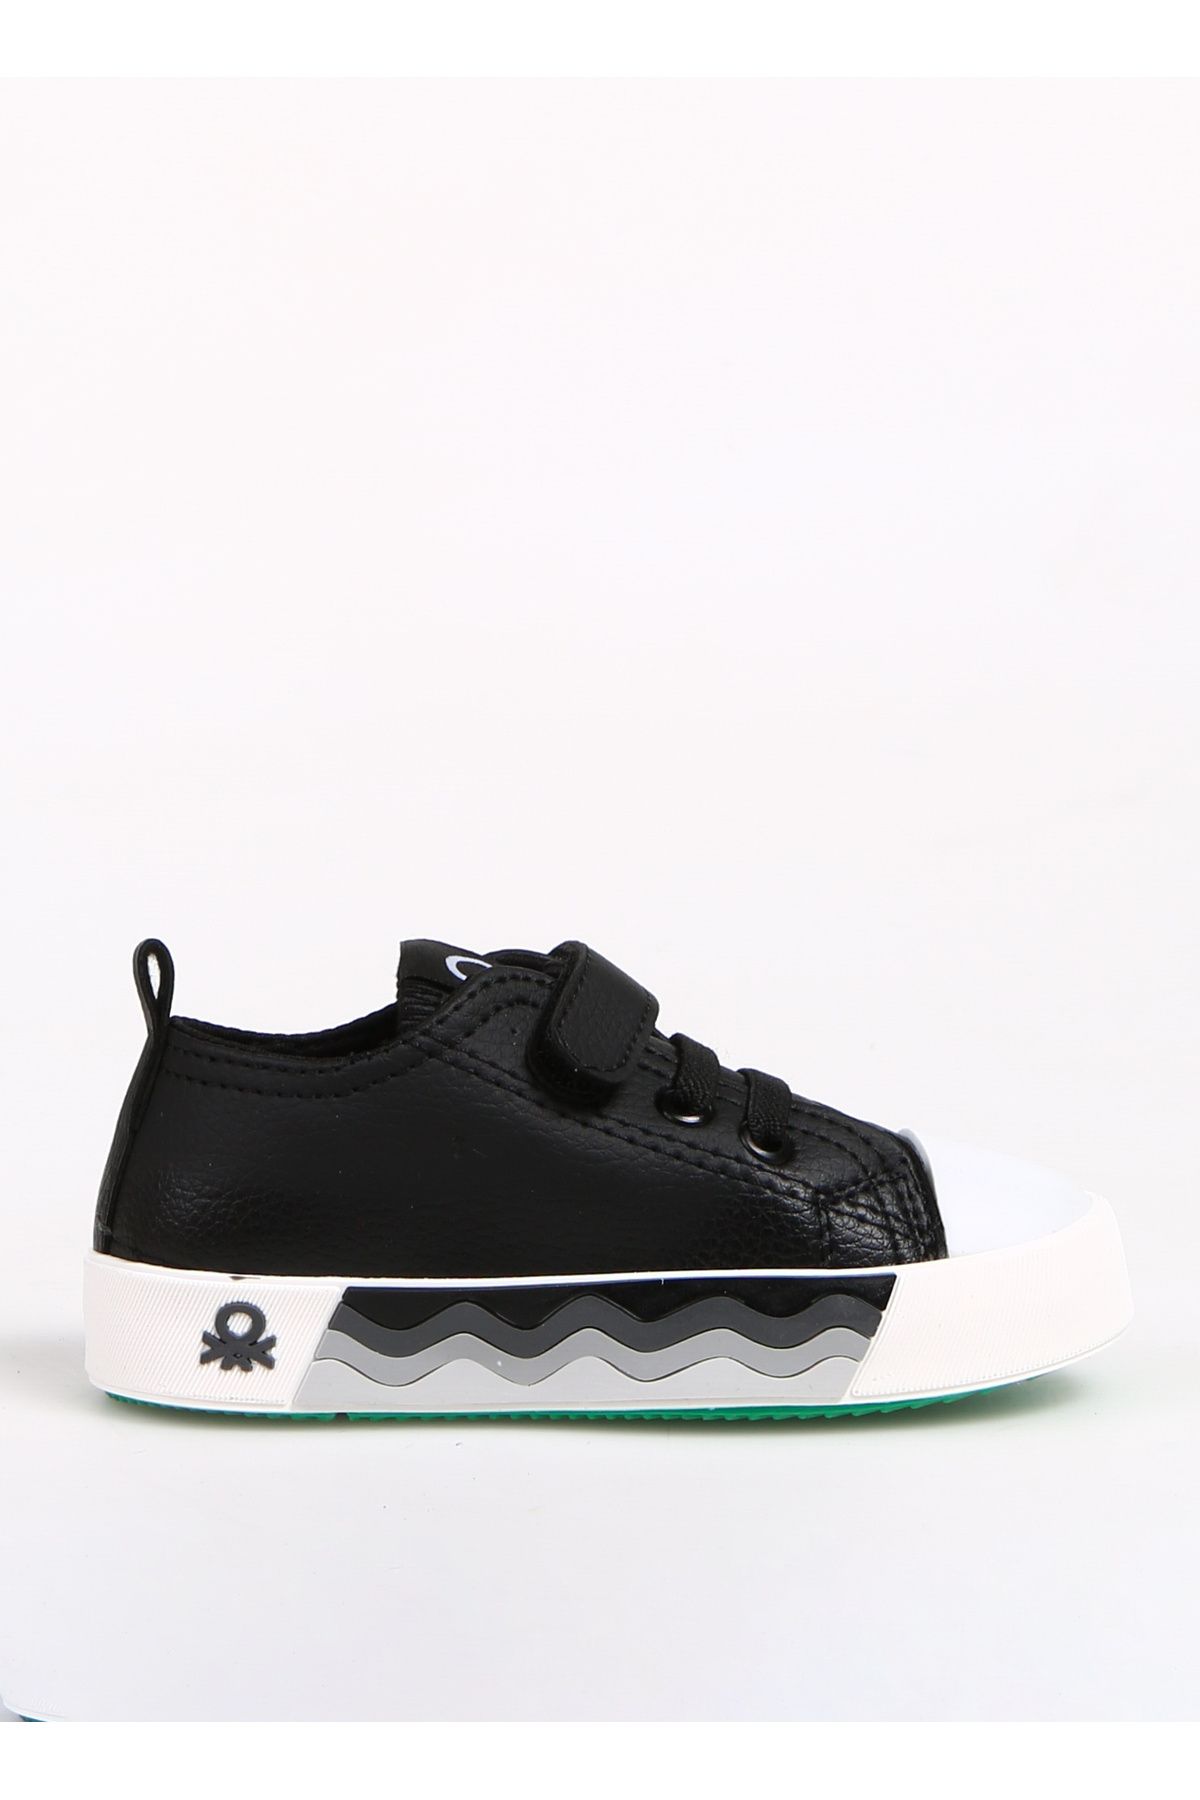 Benetton Siyah - Beyaz Erkek Çocuk Sneaker BN-31136 Siyah Beyaz